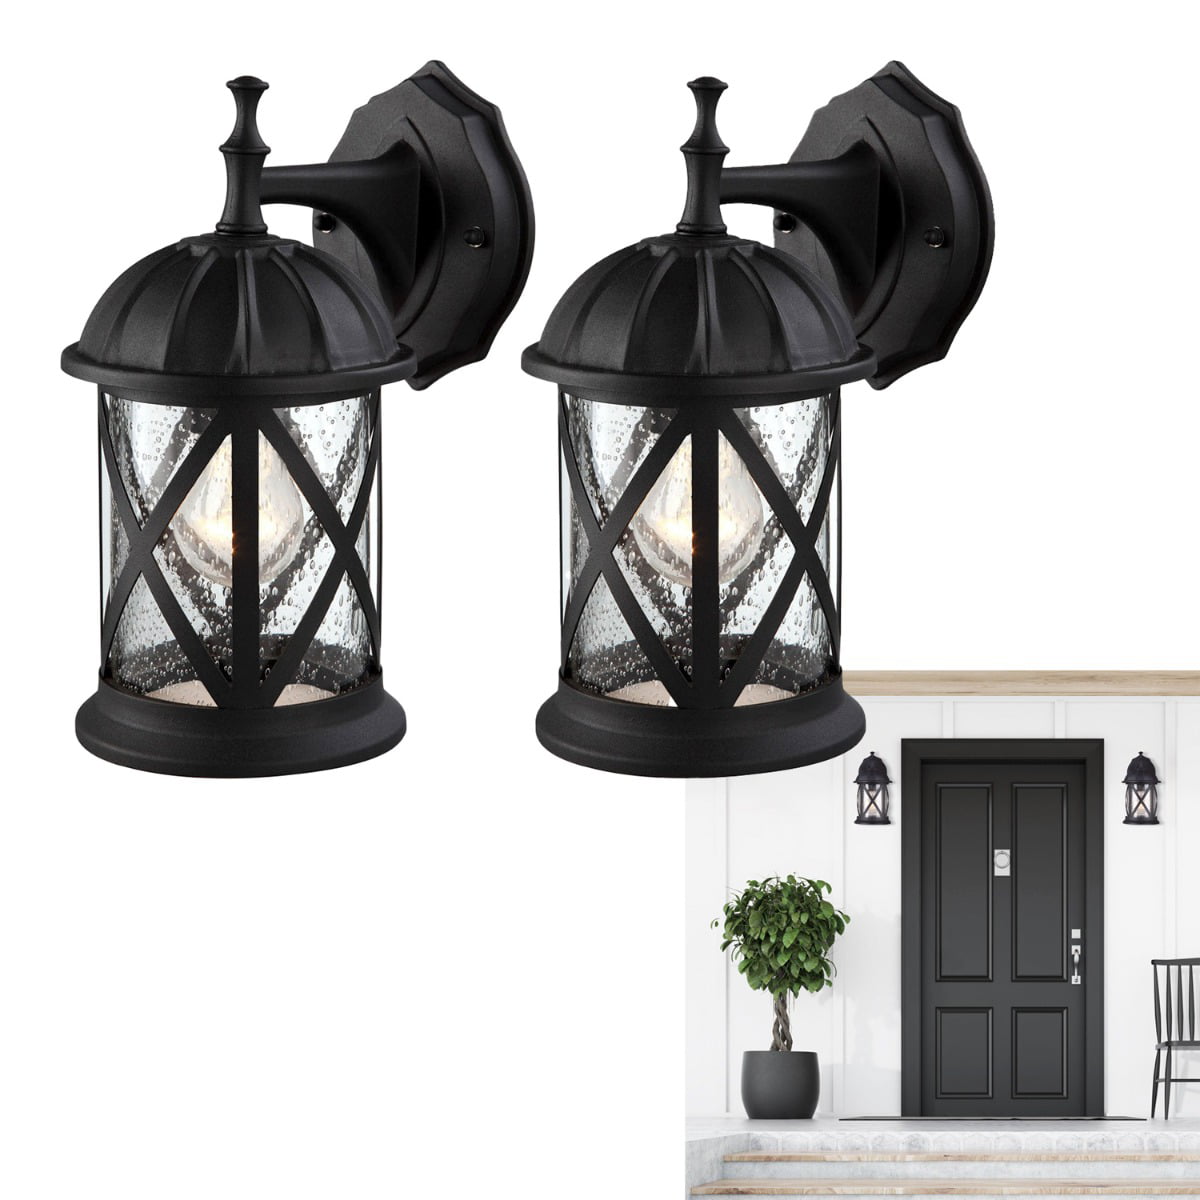 Outdoor Exterior Wall Lantern Light, Lantern Porch Light Fixture